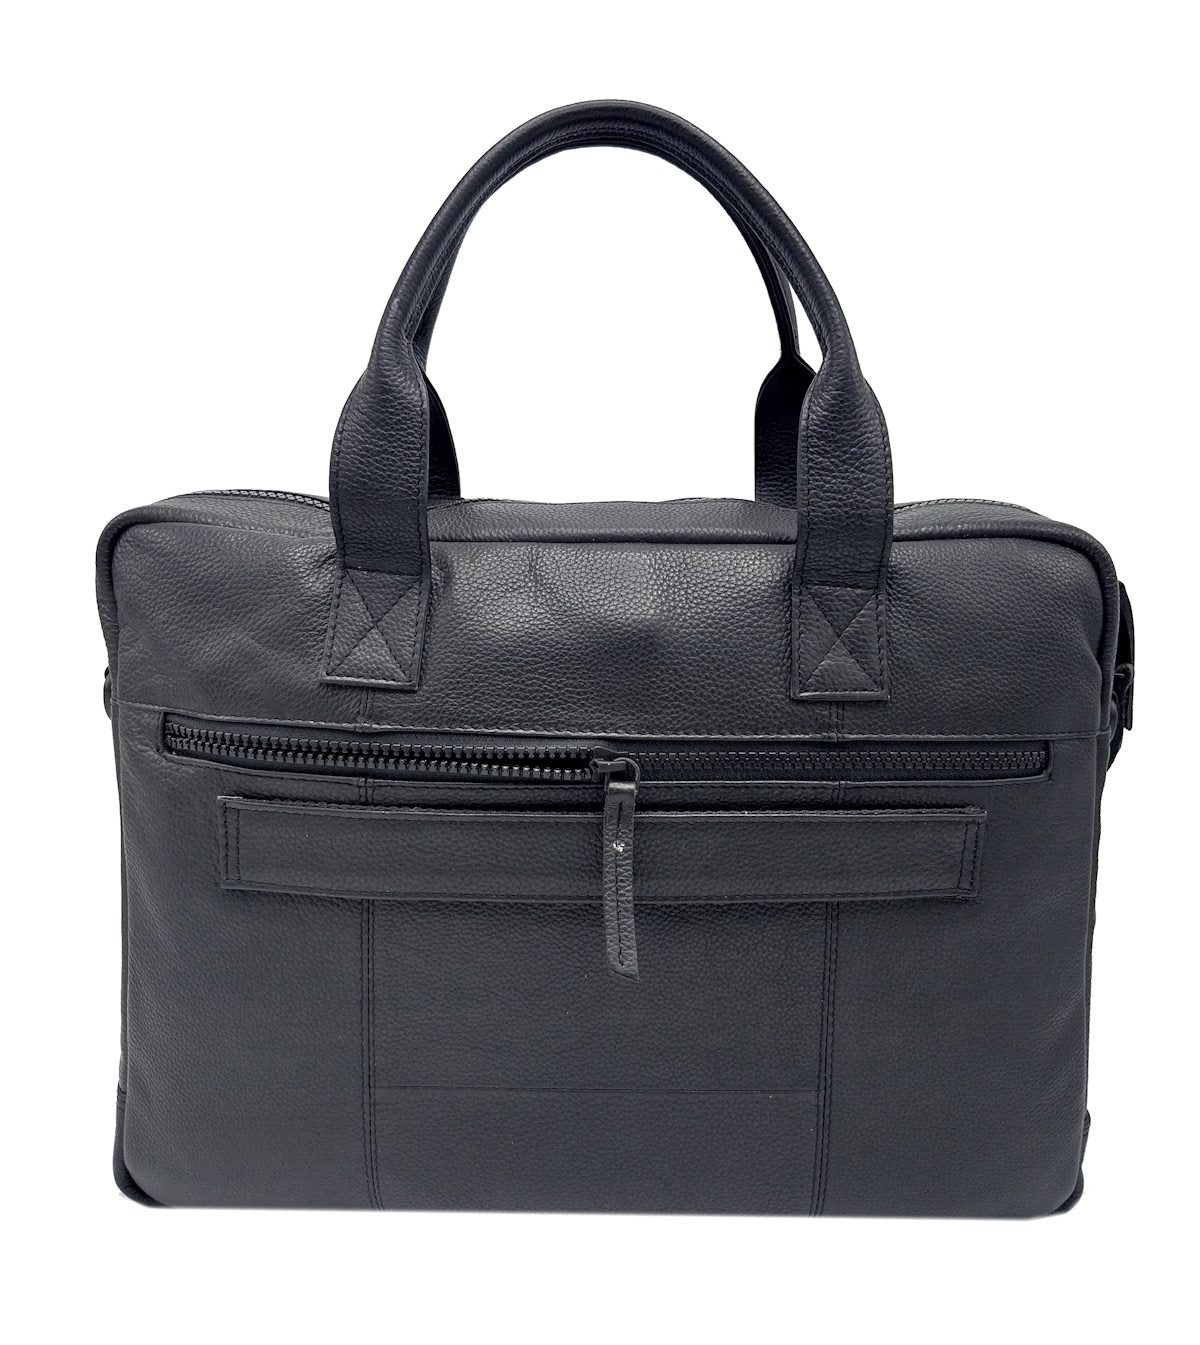 Genuine leather briefcase, Brand GMV, art. GMV517-1WK